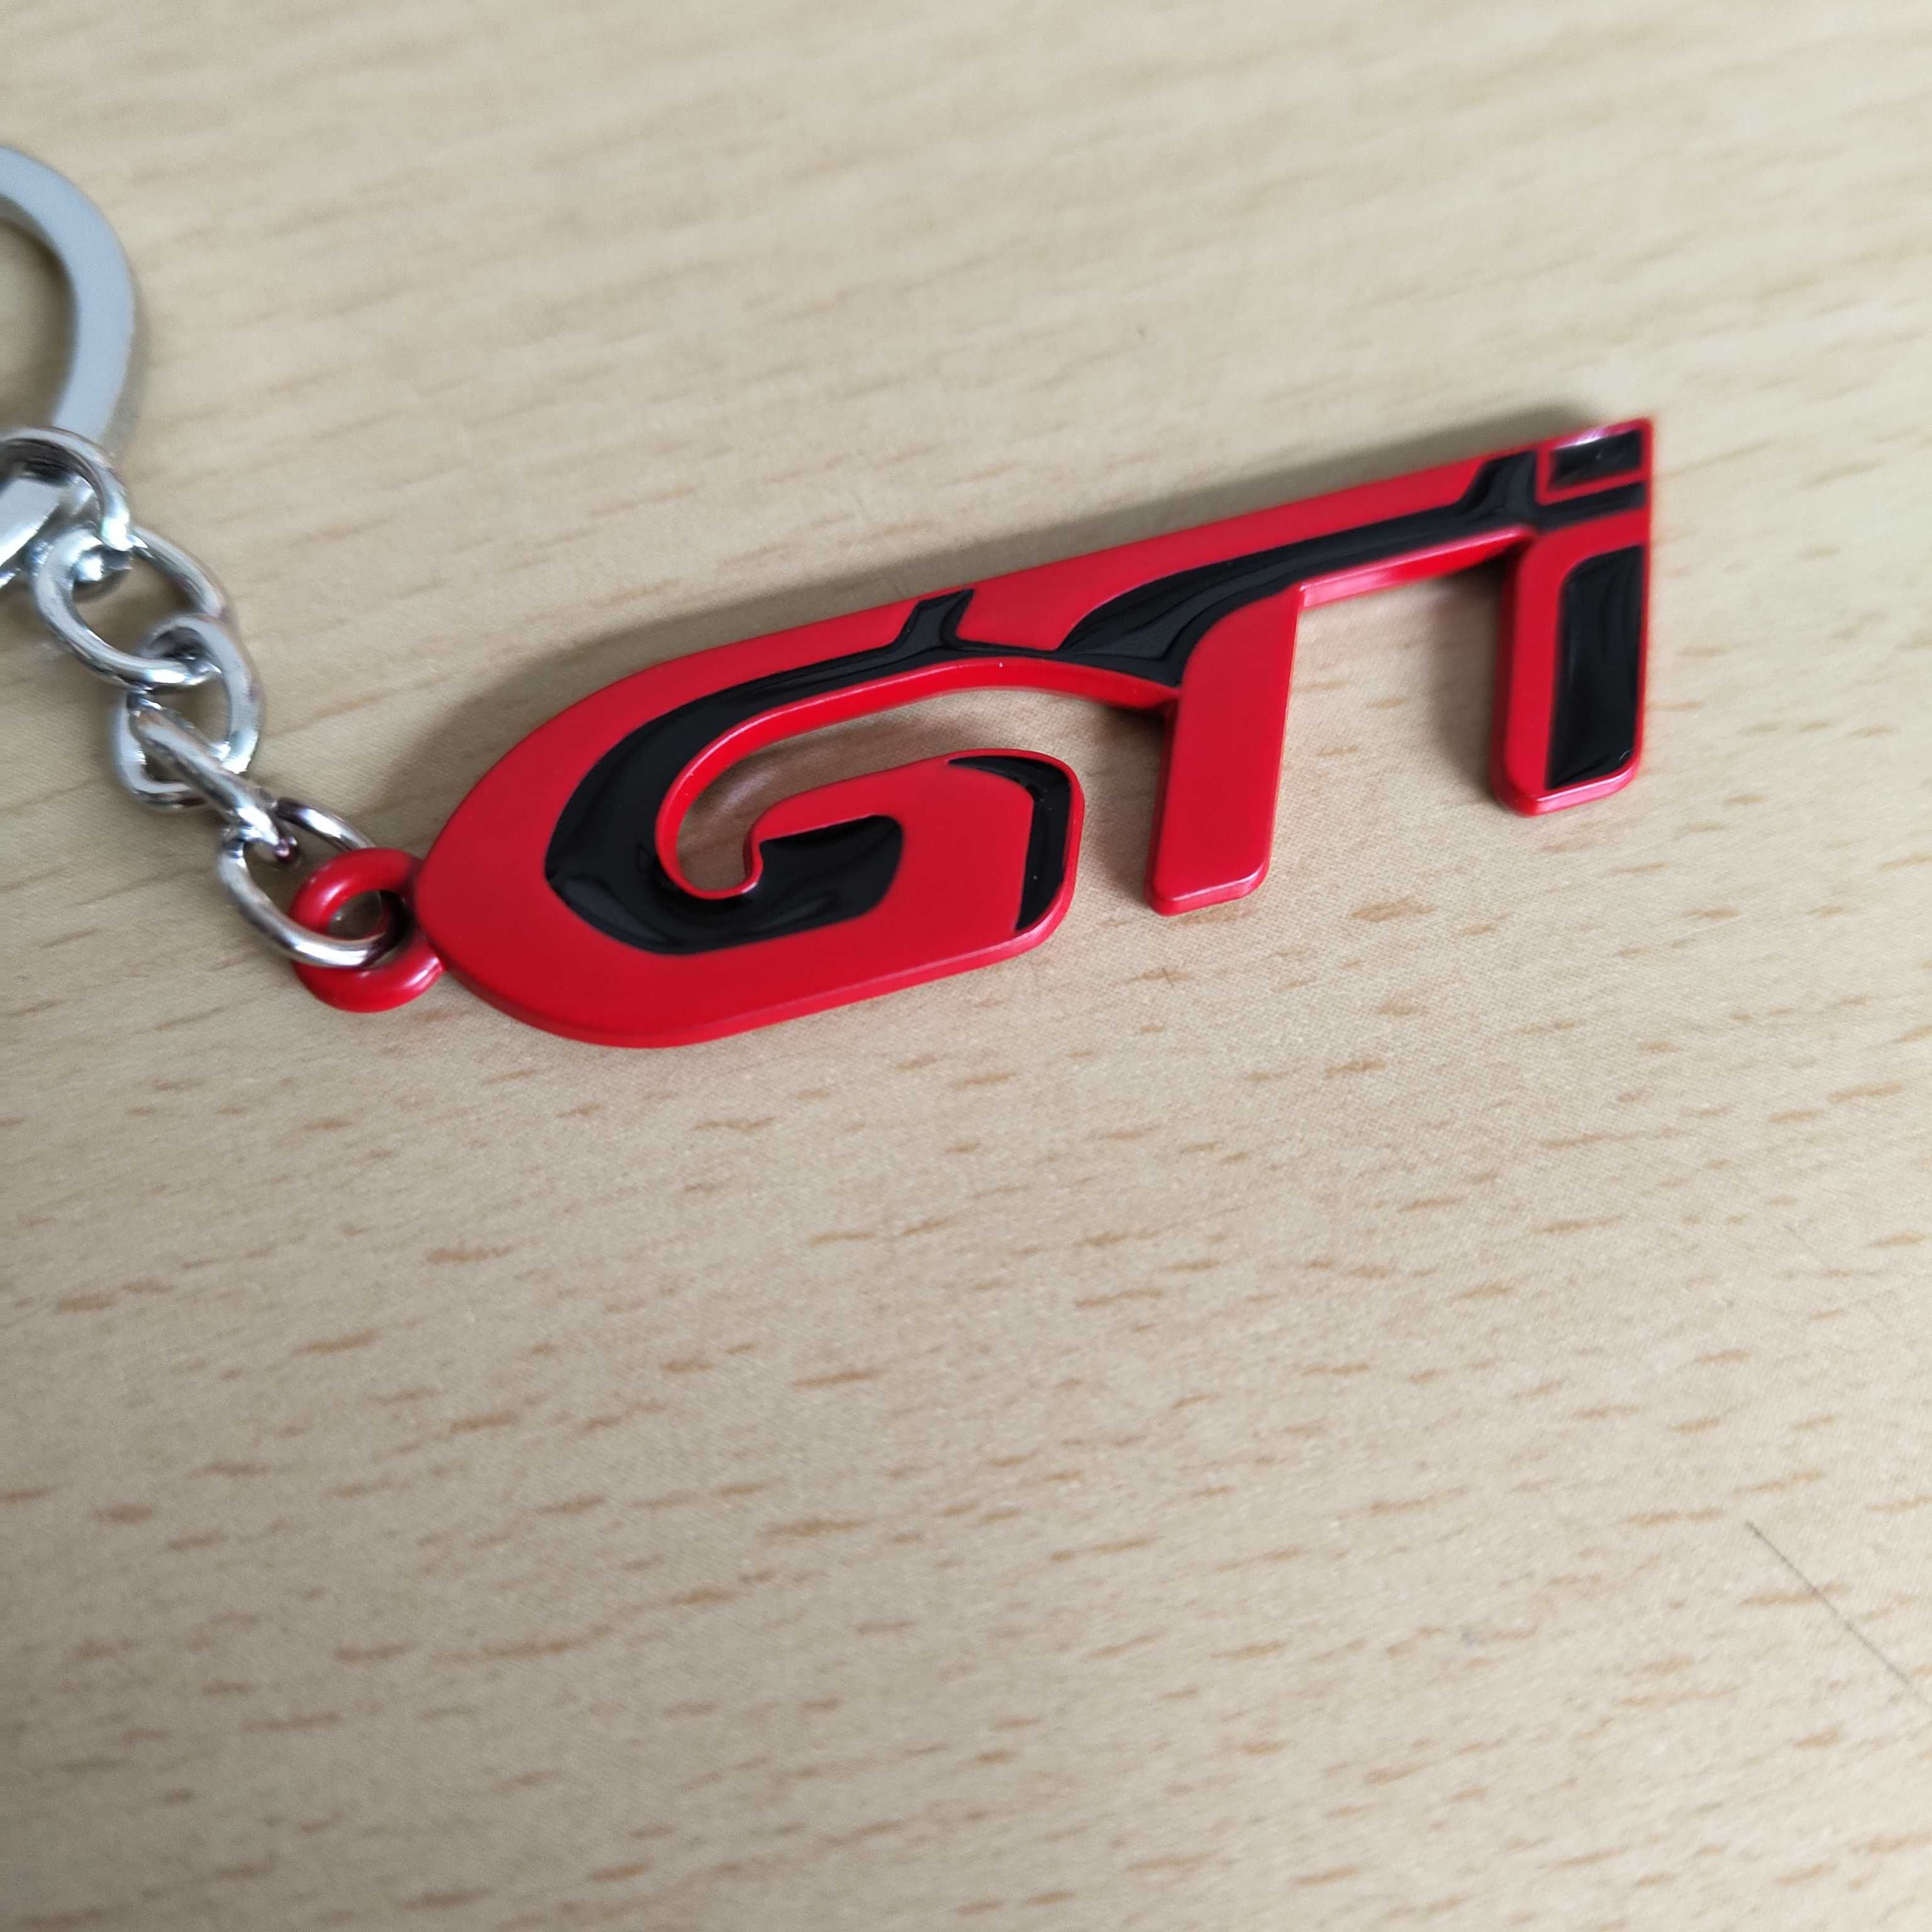 Porta-chave Carro GTI